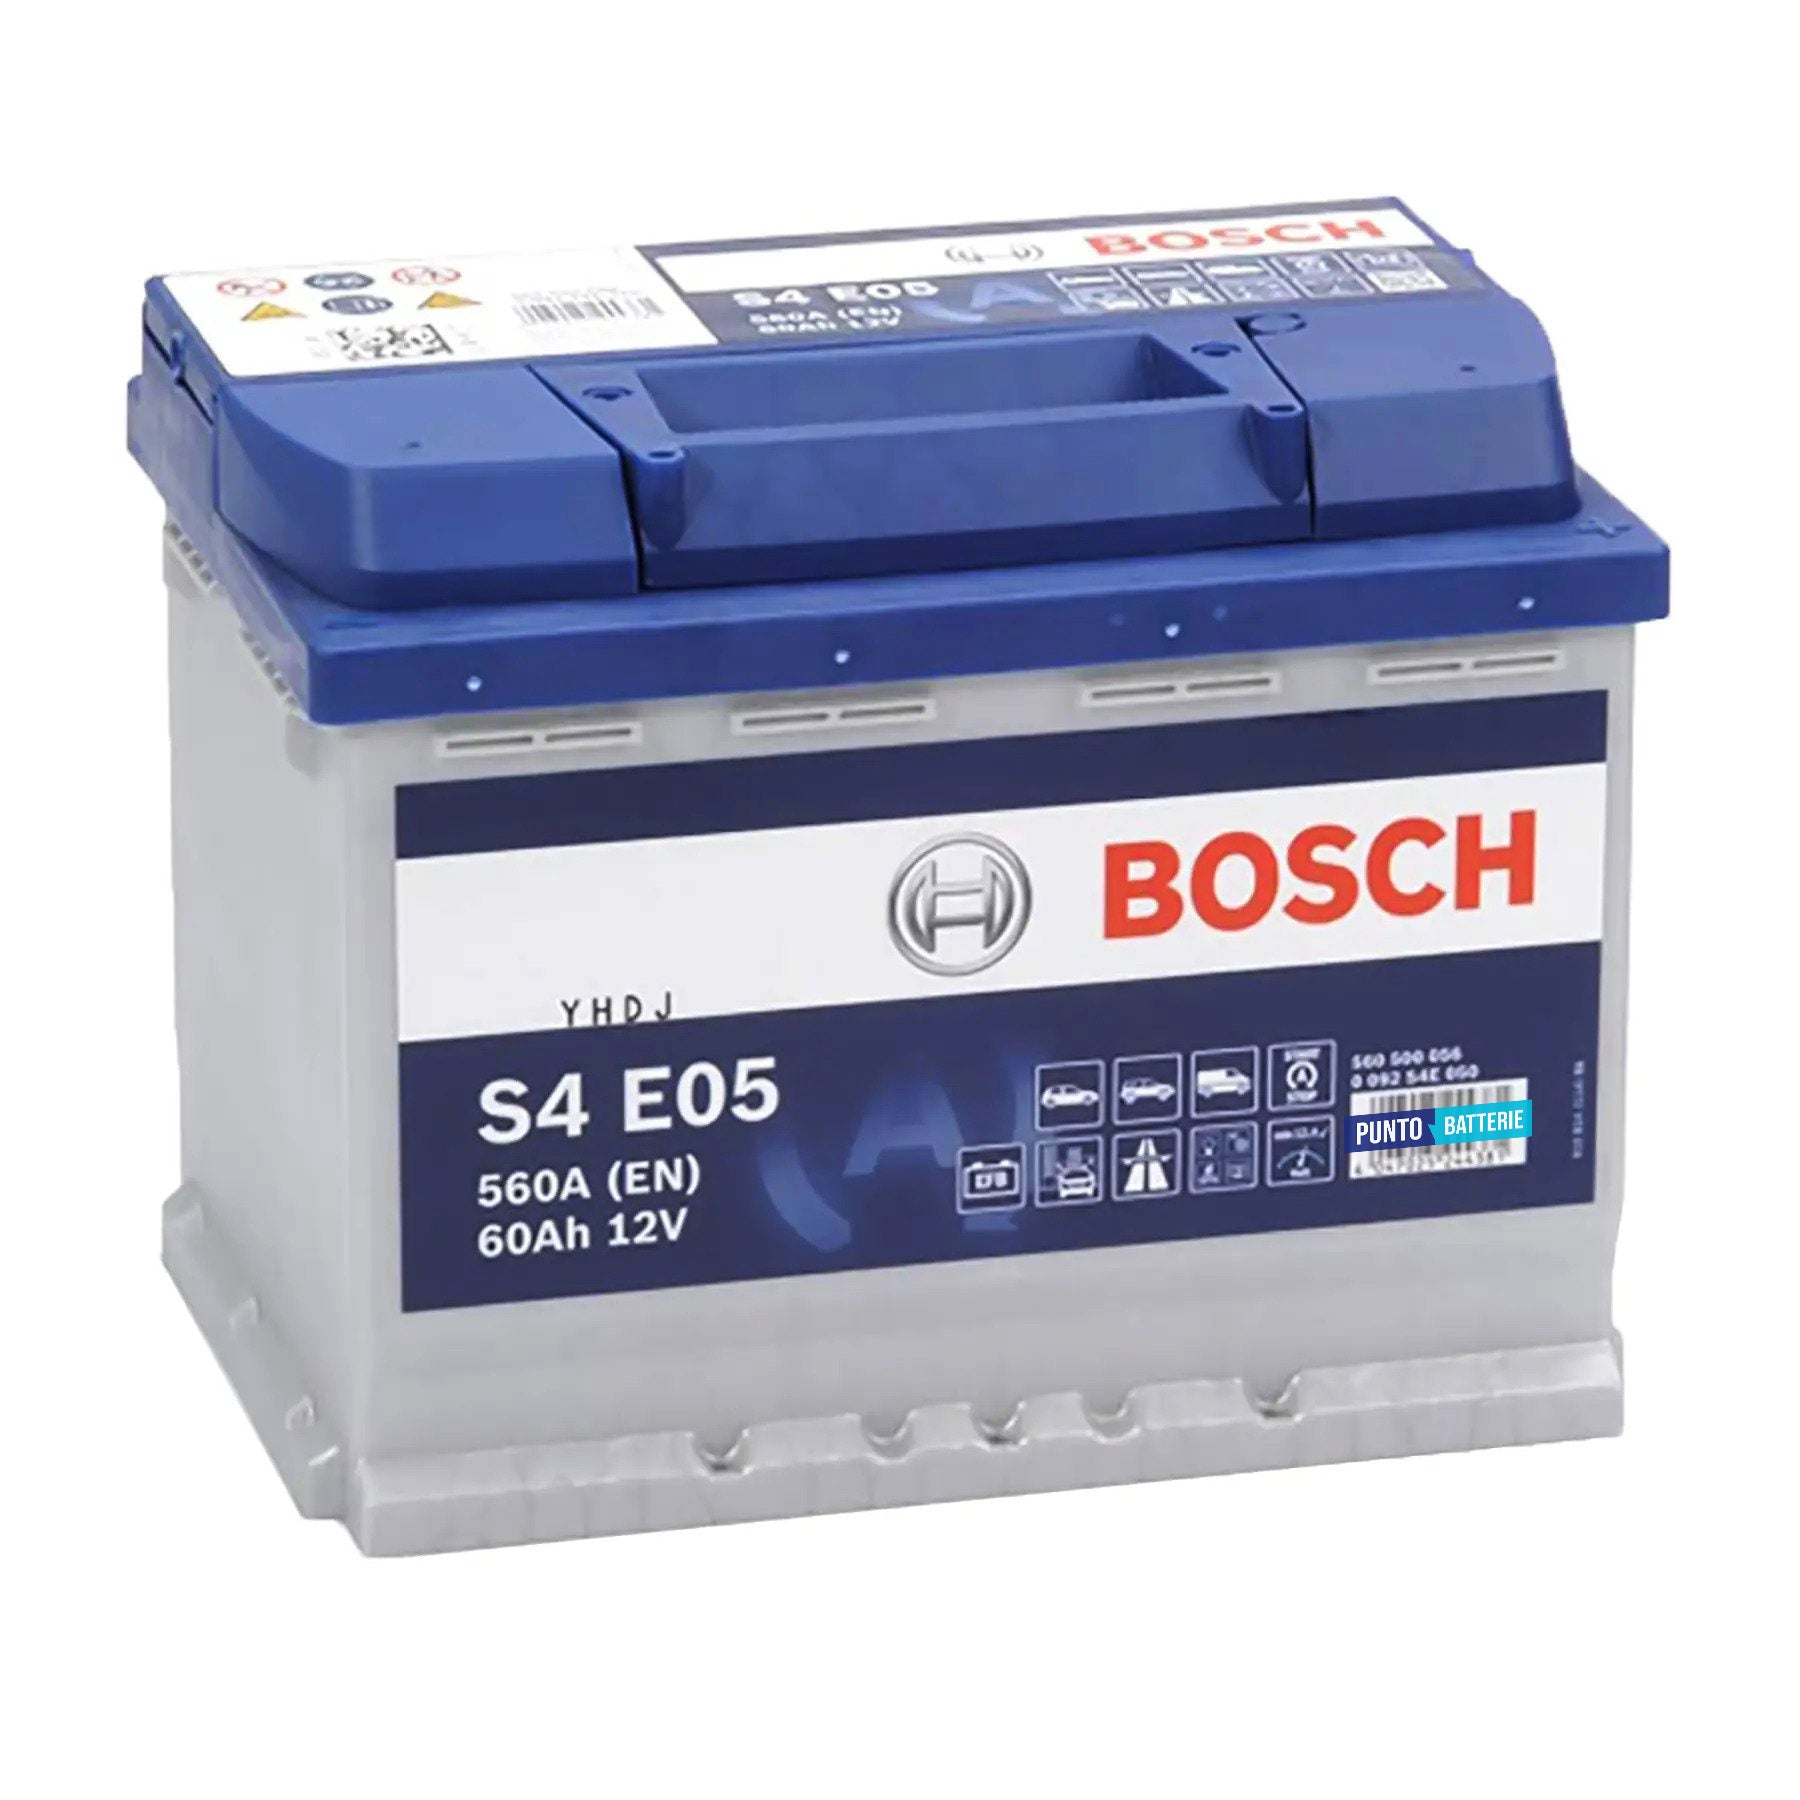 Batteria originale Bosch S4E S4 E05, dimensioni 242 x 175 x 190, polo positivo a destra, 12 volt, 60 amperora, 640 ampere, EFB. Batteria per auto e veicoli leggeri con start e stop.